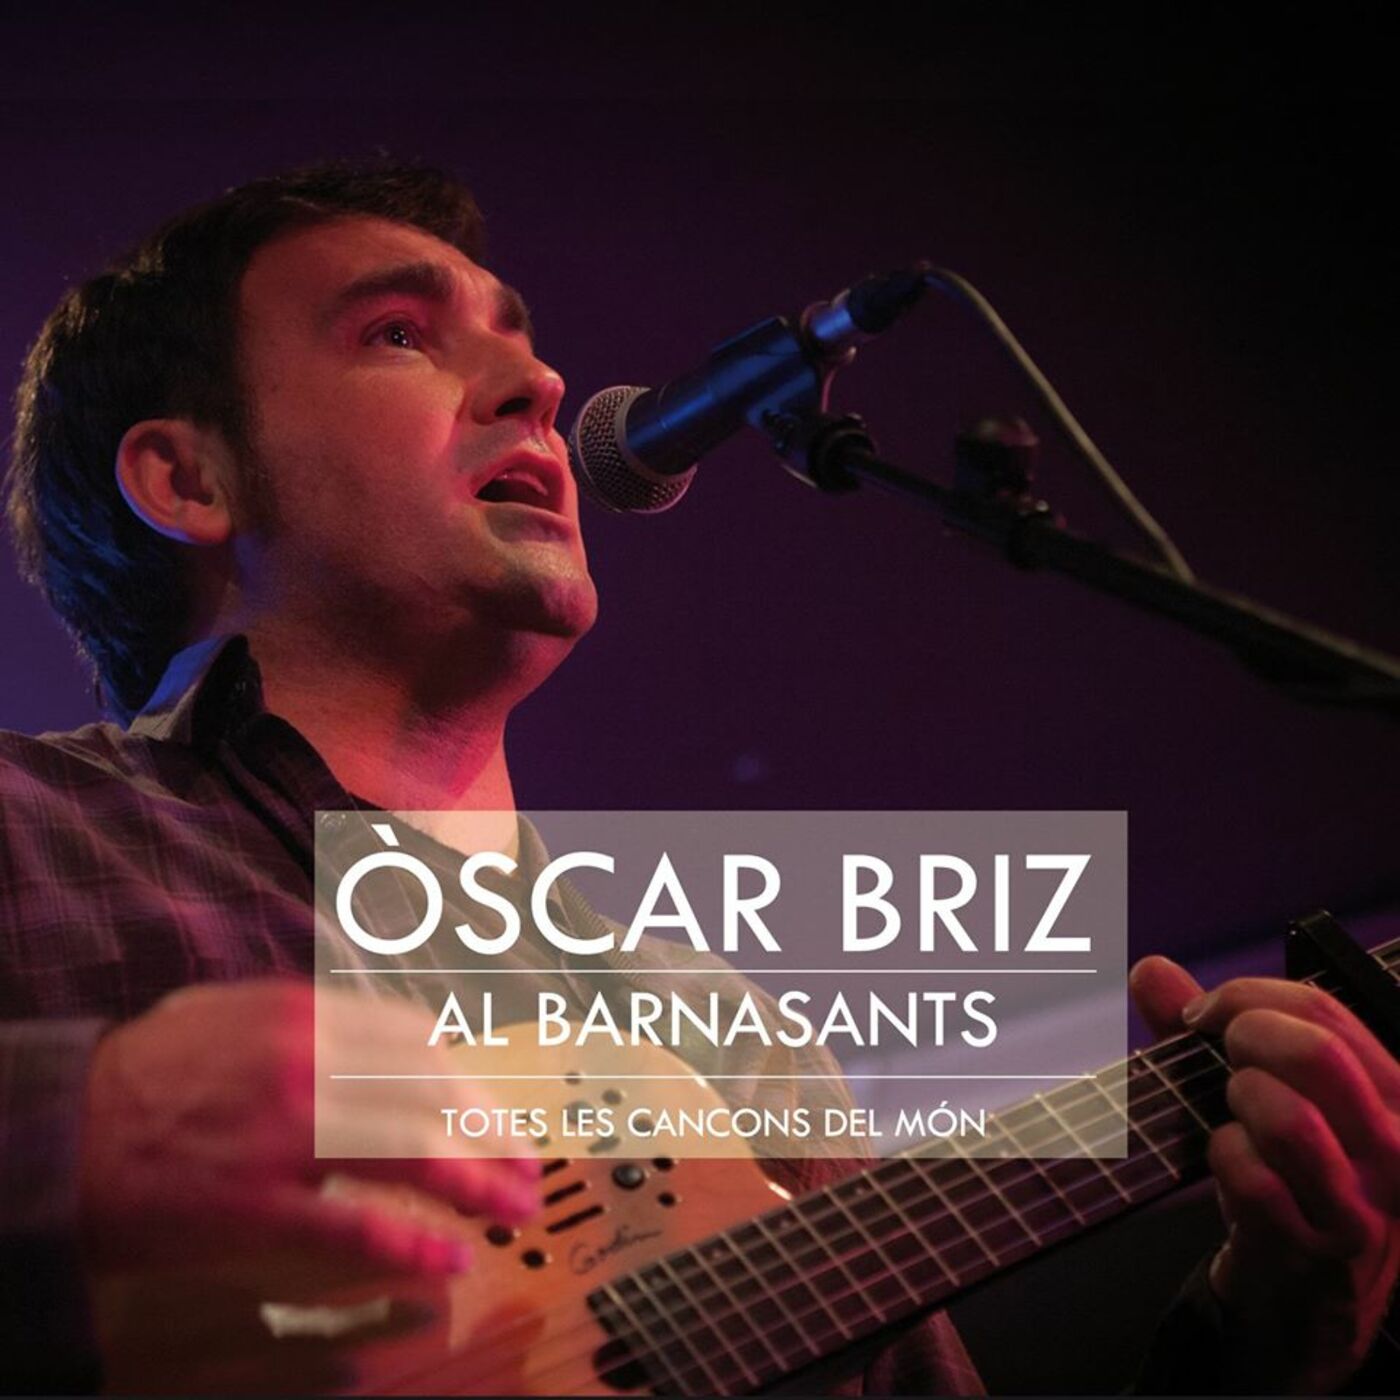 Òscar Briz - Al BarnaSants. Totes les cançons del món | musica en valencià